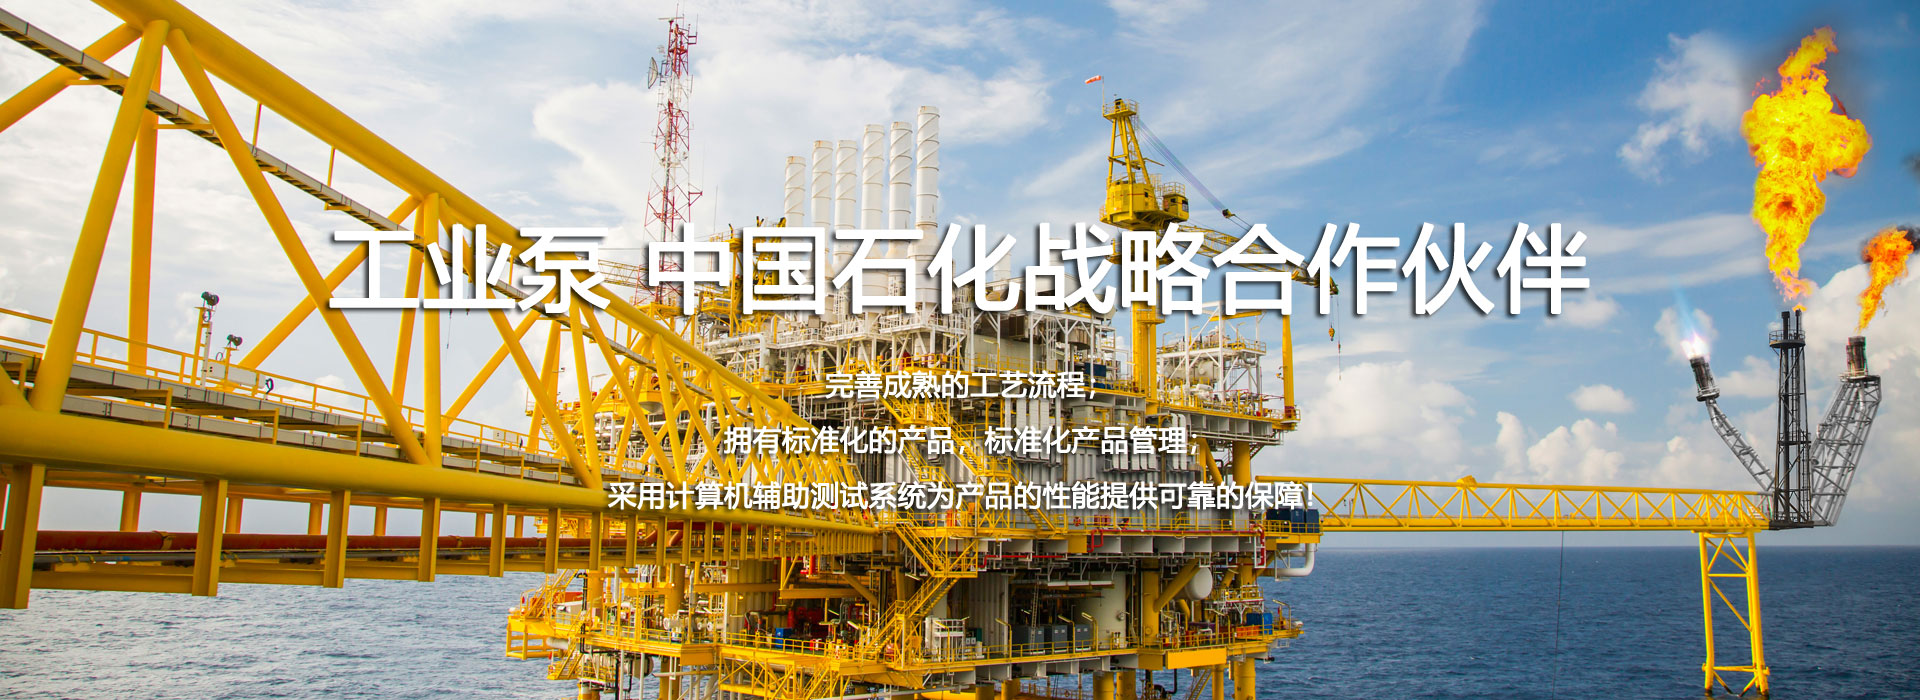 工业泵 中国石化战略合作伙伴